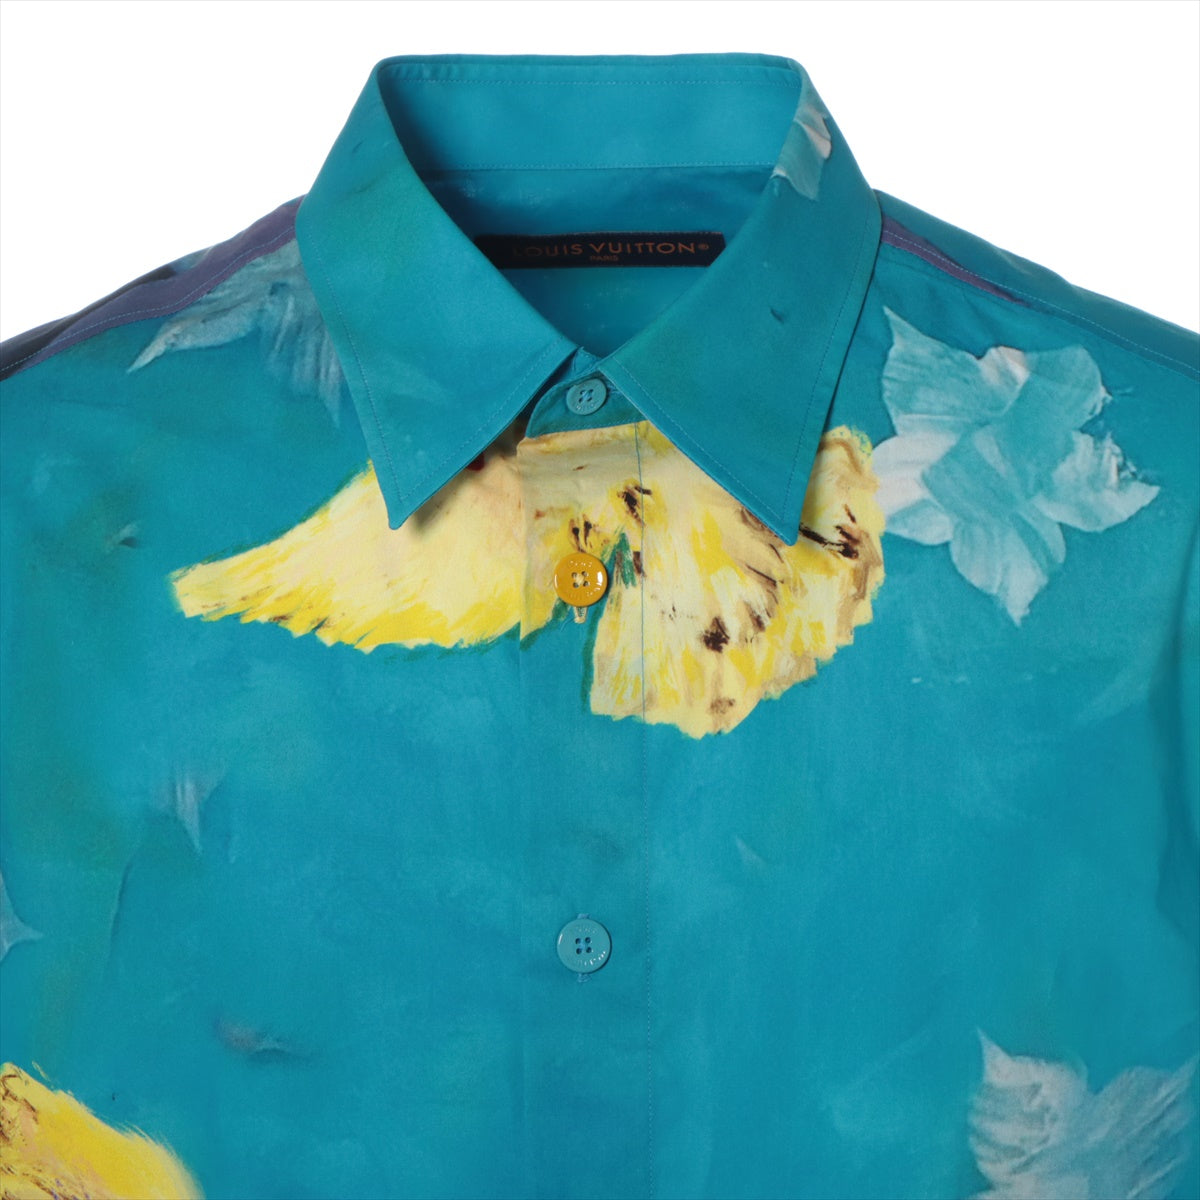 Louis Vuitton 23AW Cotton Shirt L Men's Multicolor  RM232 printed cotton short sleeve shirt Damier Check patterns